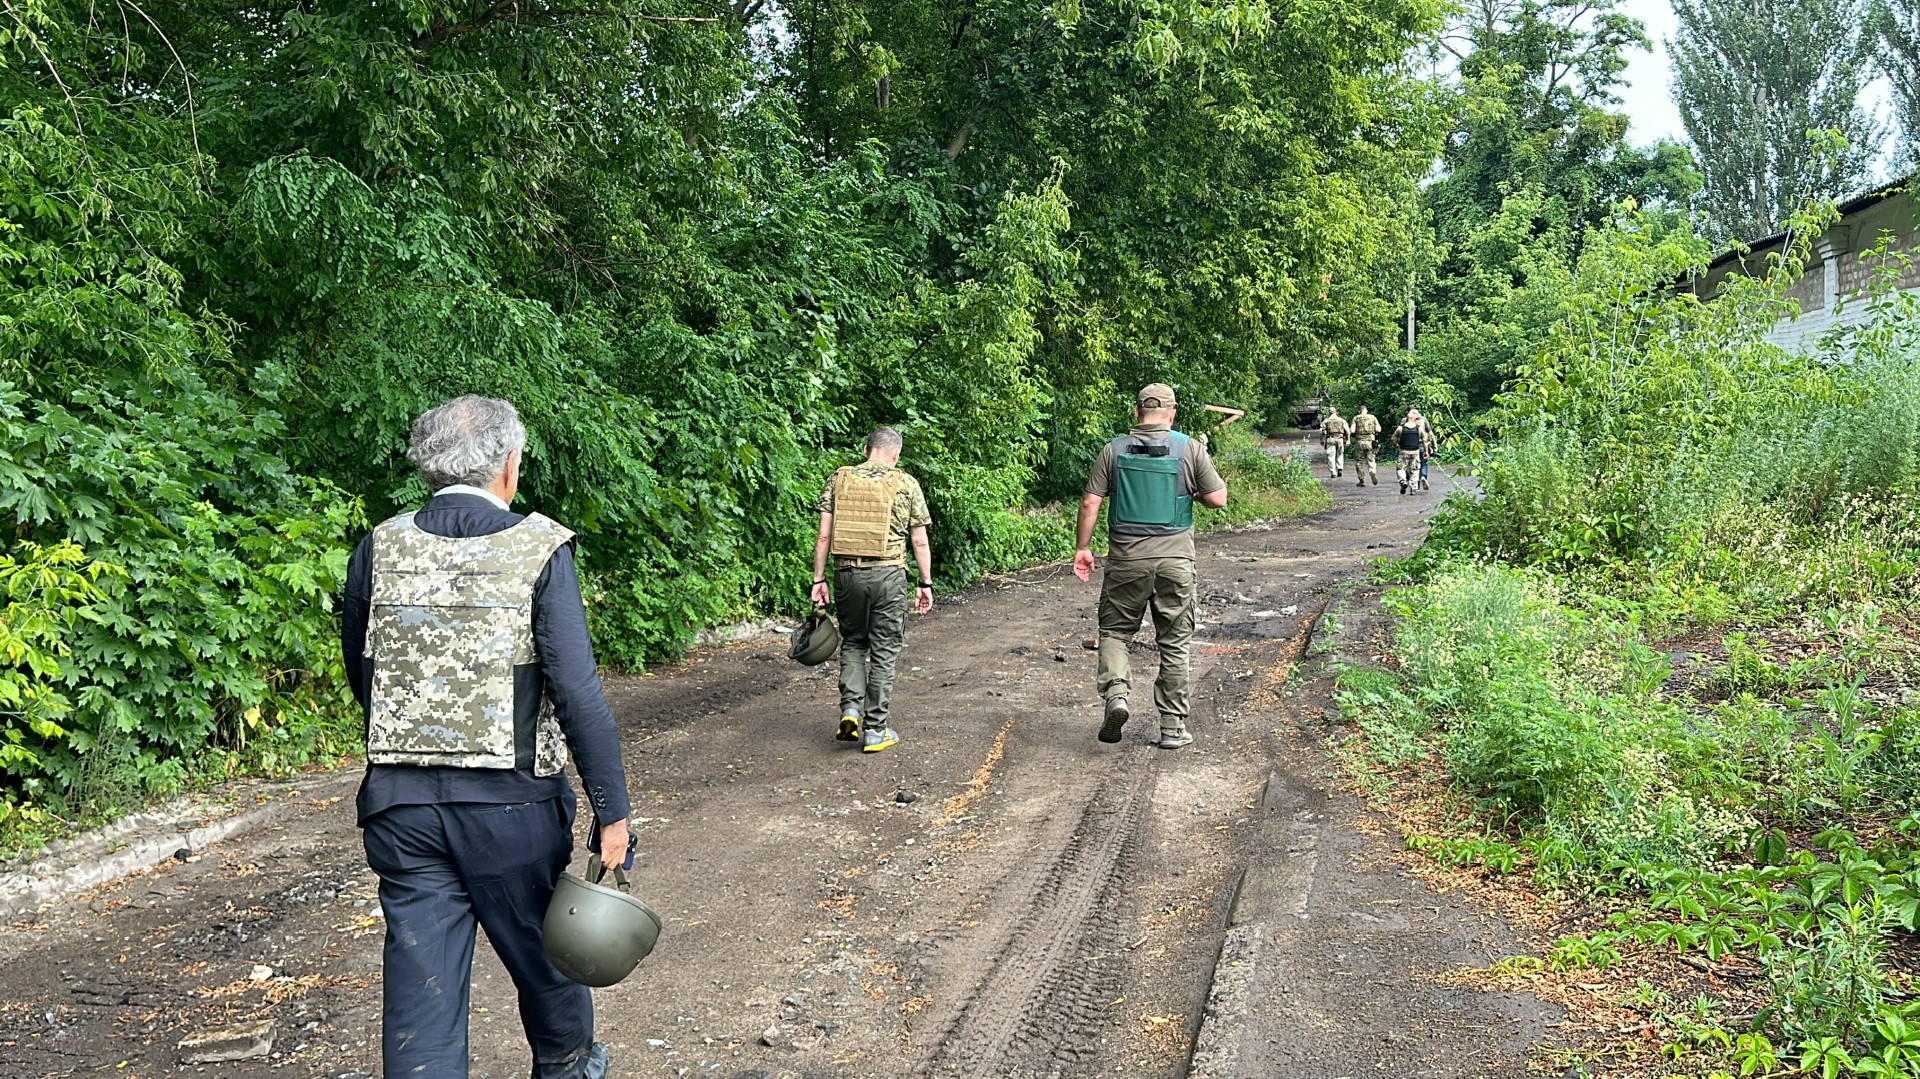 Dans le Donbass, vers Lyman, BHL est avec les soldats ukrainiens, ils marchent dans la nature sur un chemin de terre, on les voit de dos.